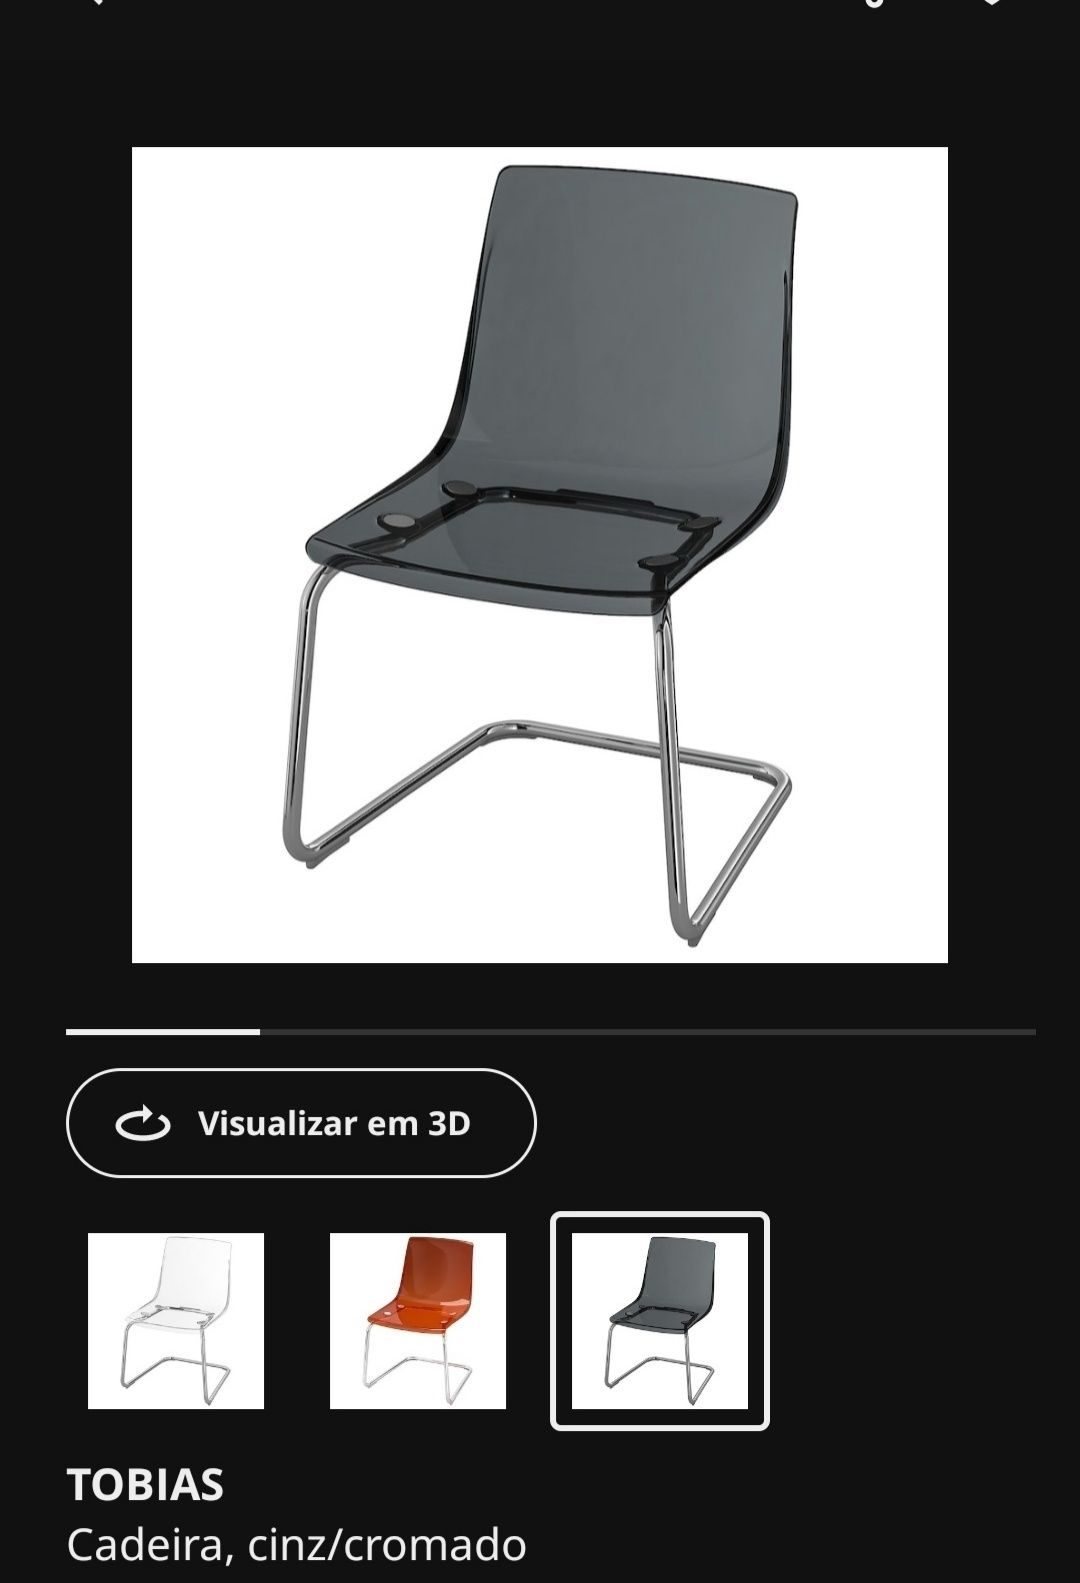 6 Cadeiras IKEA Tobias